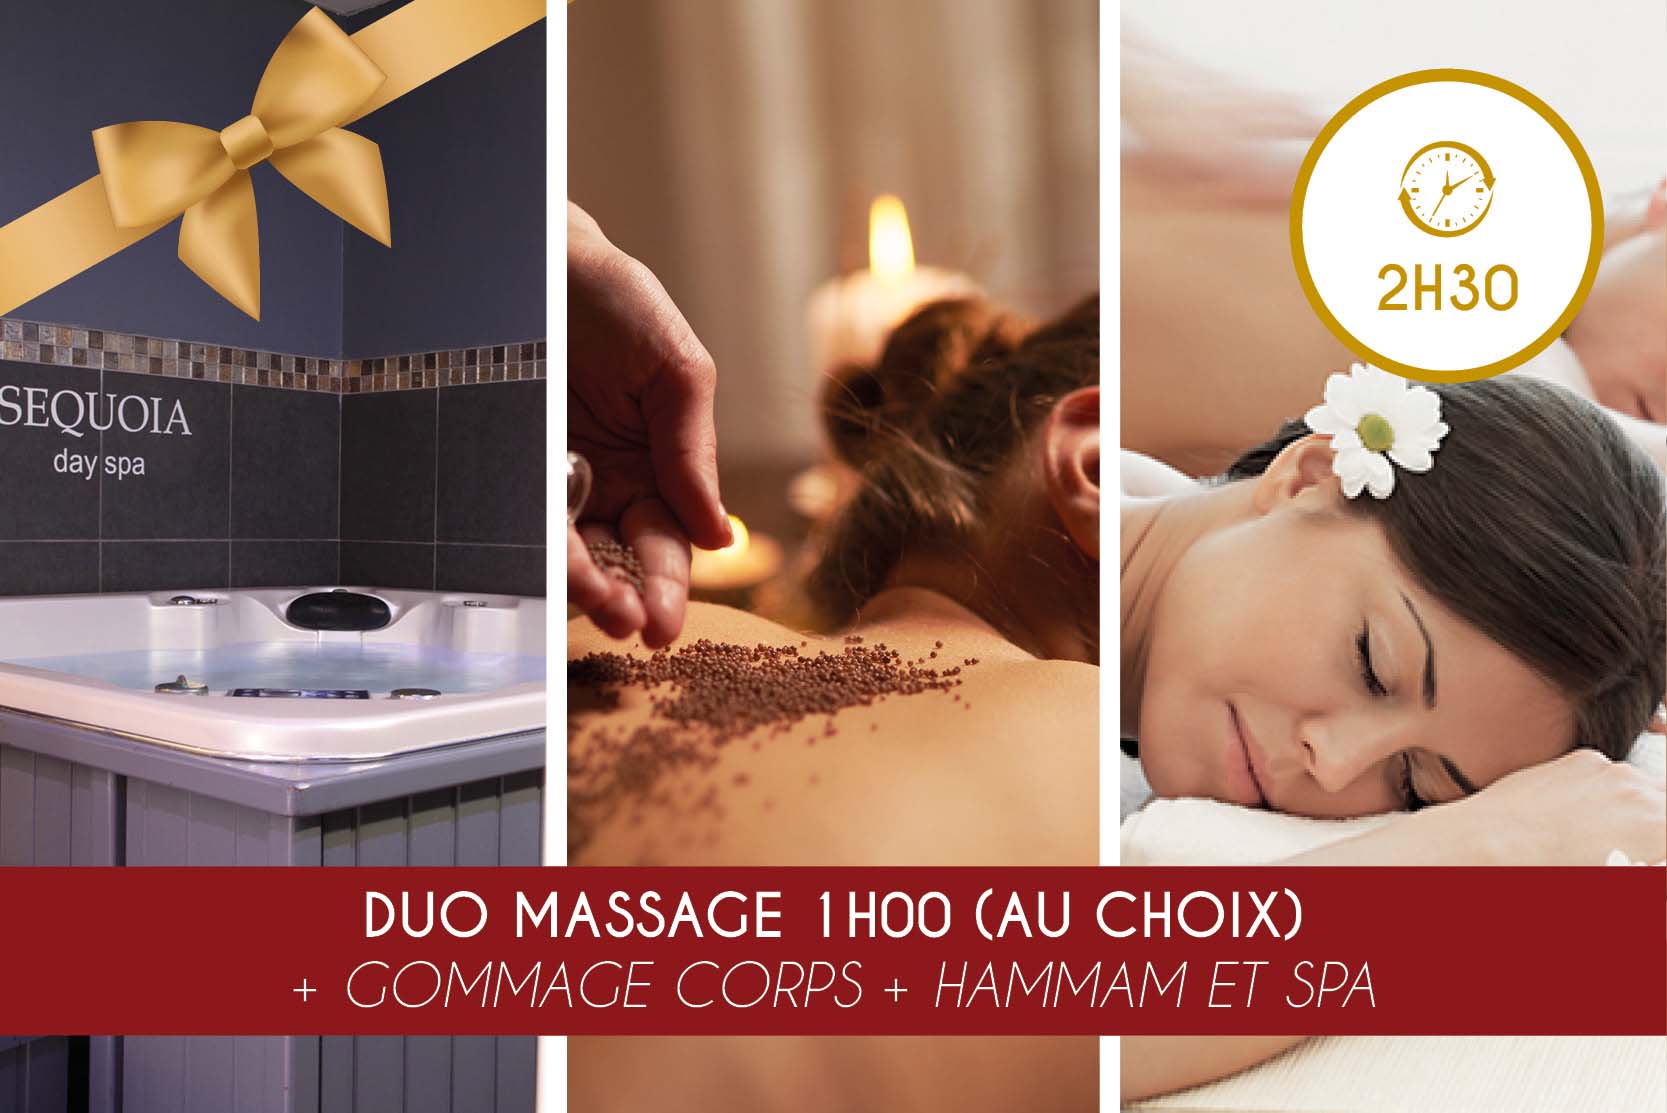 Duo Massage 1h00 (au choix) + Gommage + Hammam ET Spa